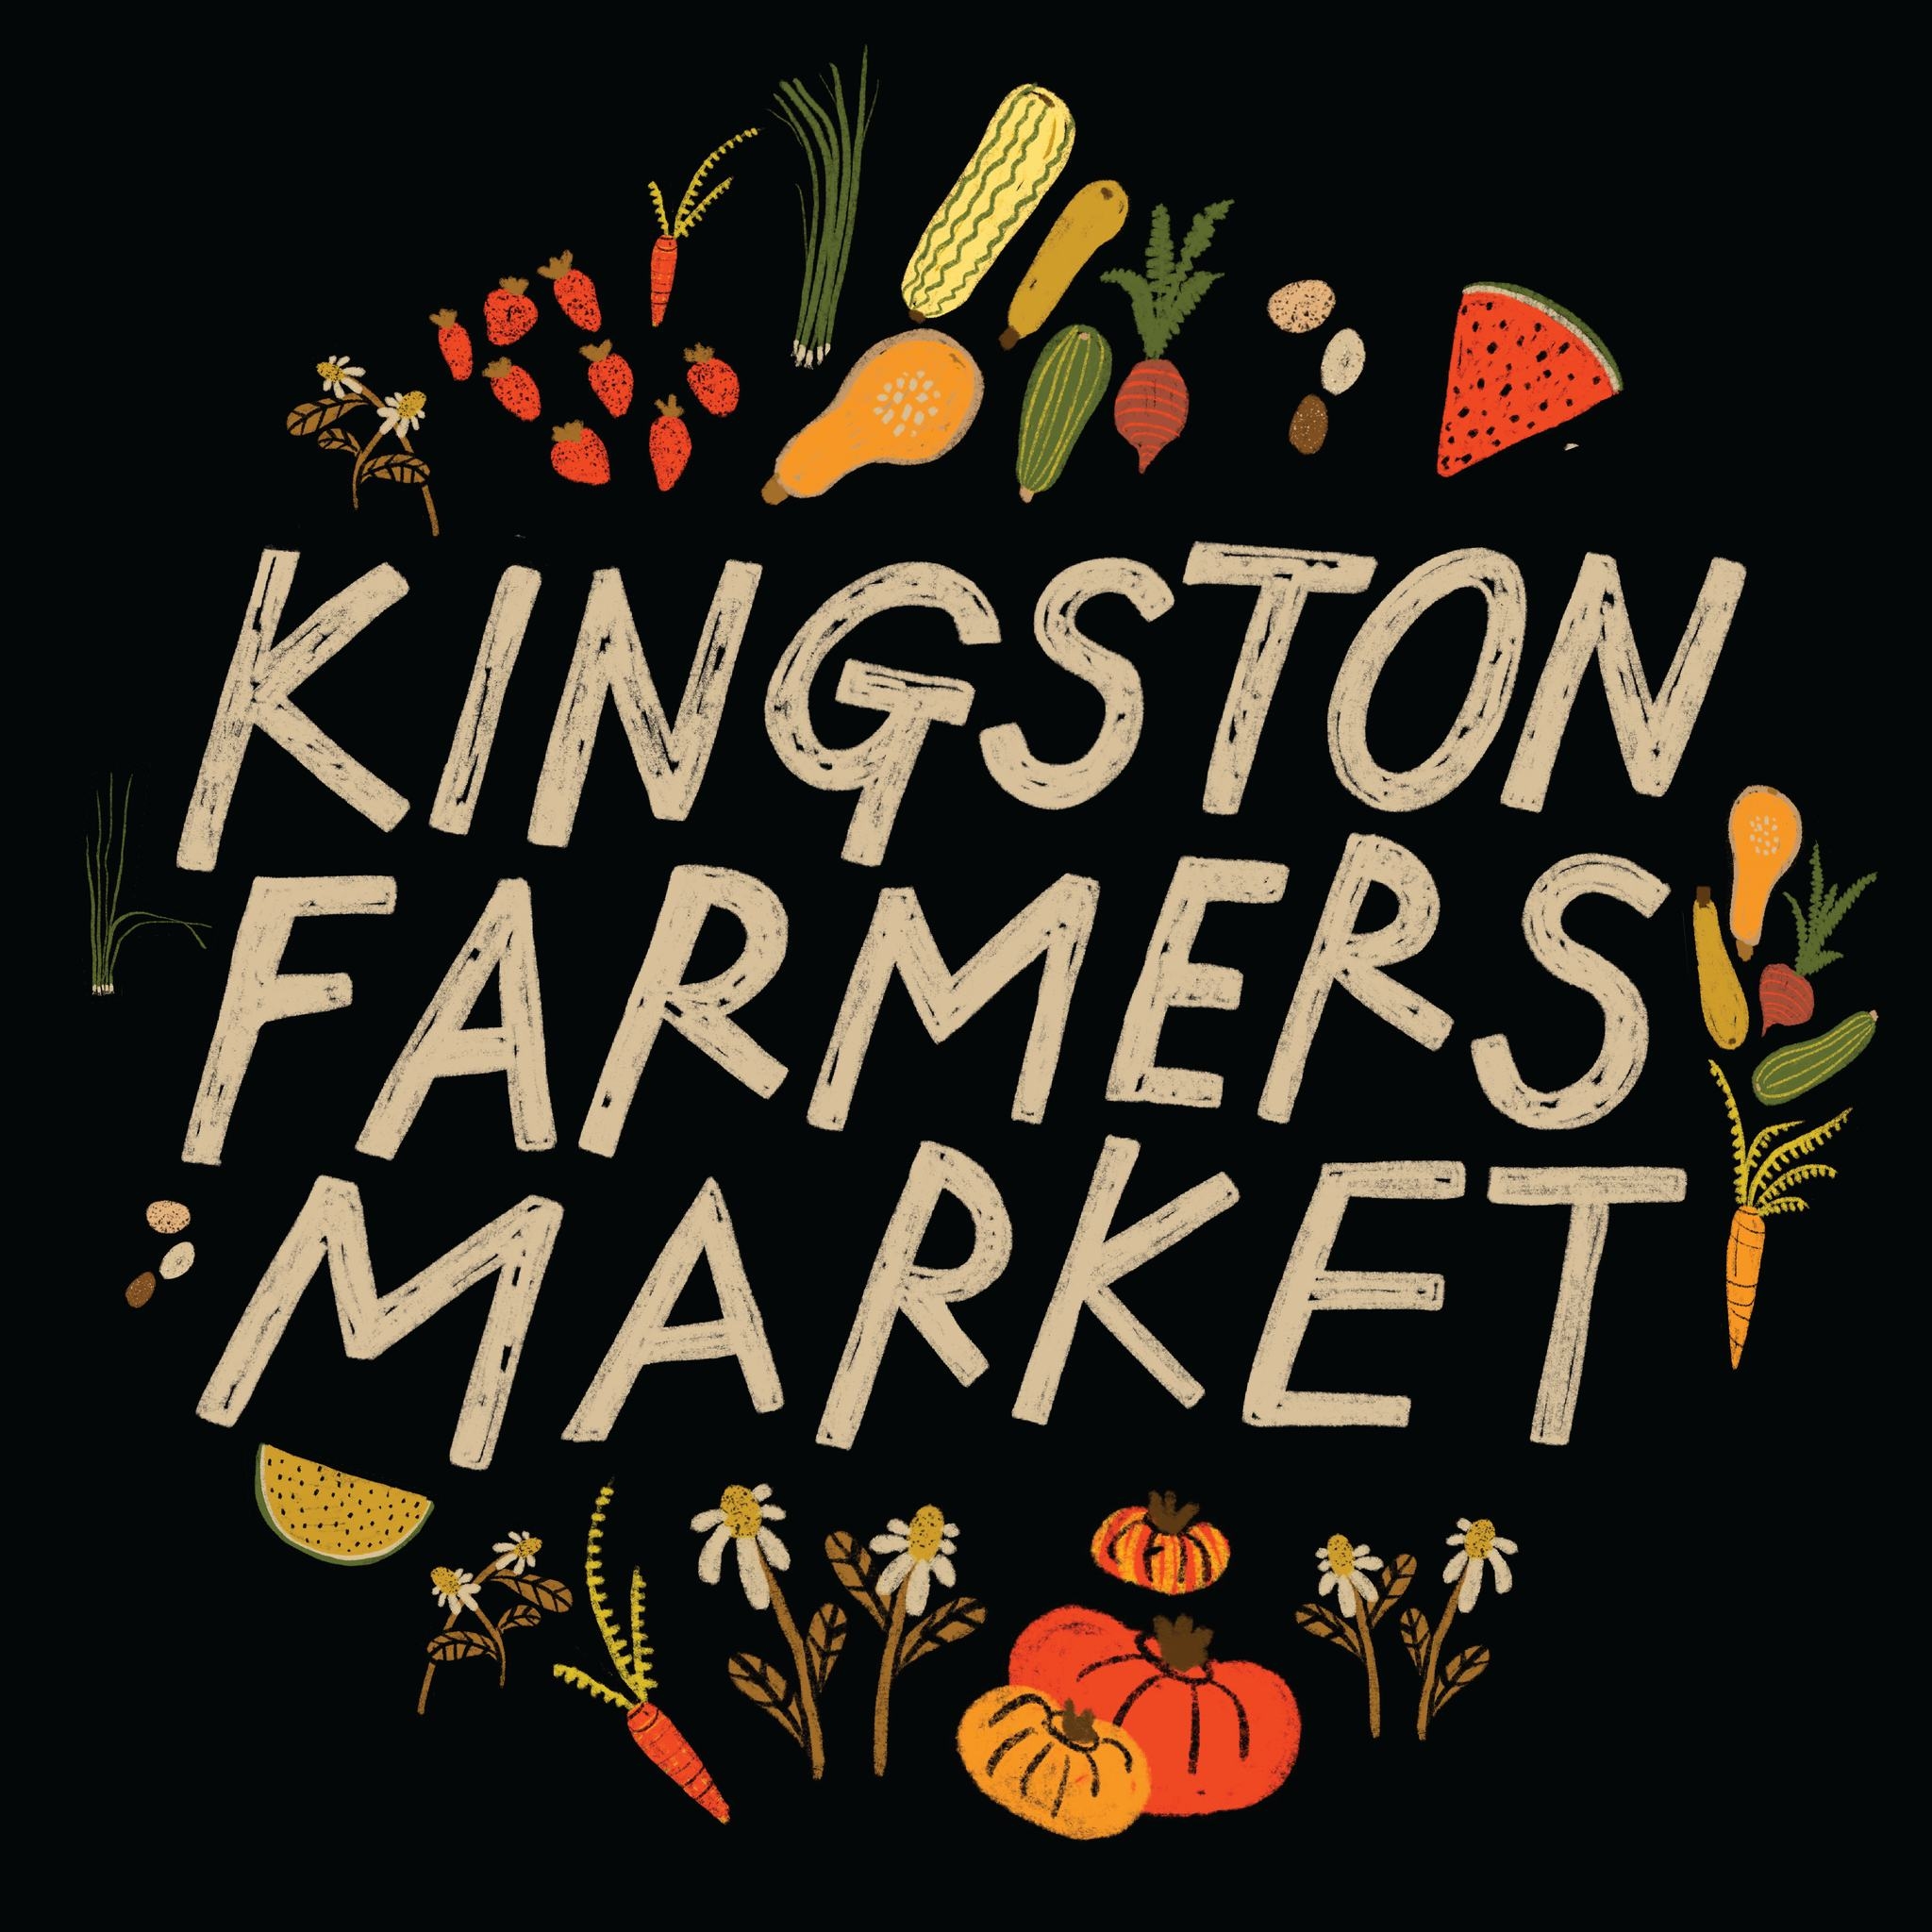 Kingston Uptown Farmers Market